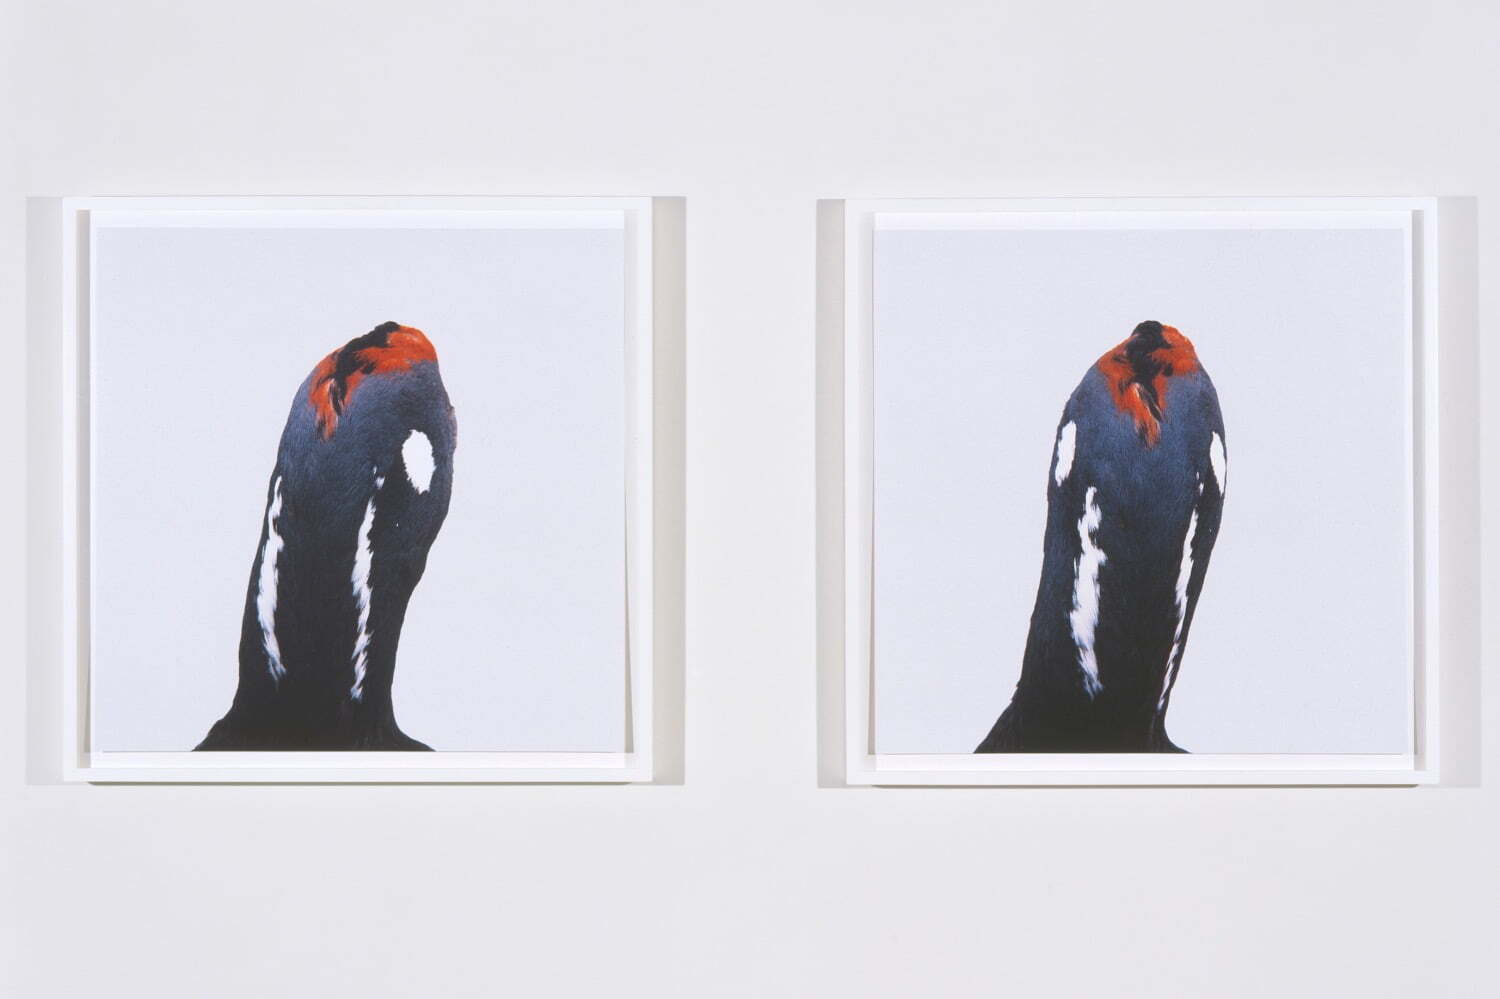 ロニ・ホーンの個展がタカ・イシイギャラリーで - 野鳥の剥製を撮影